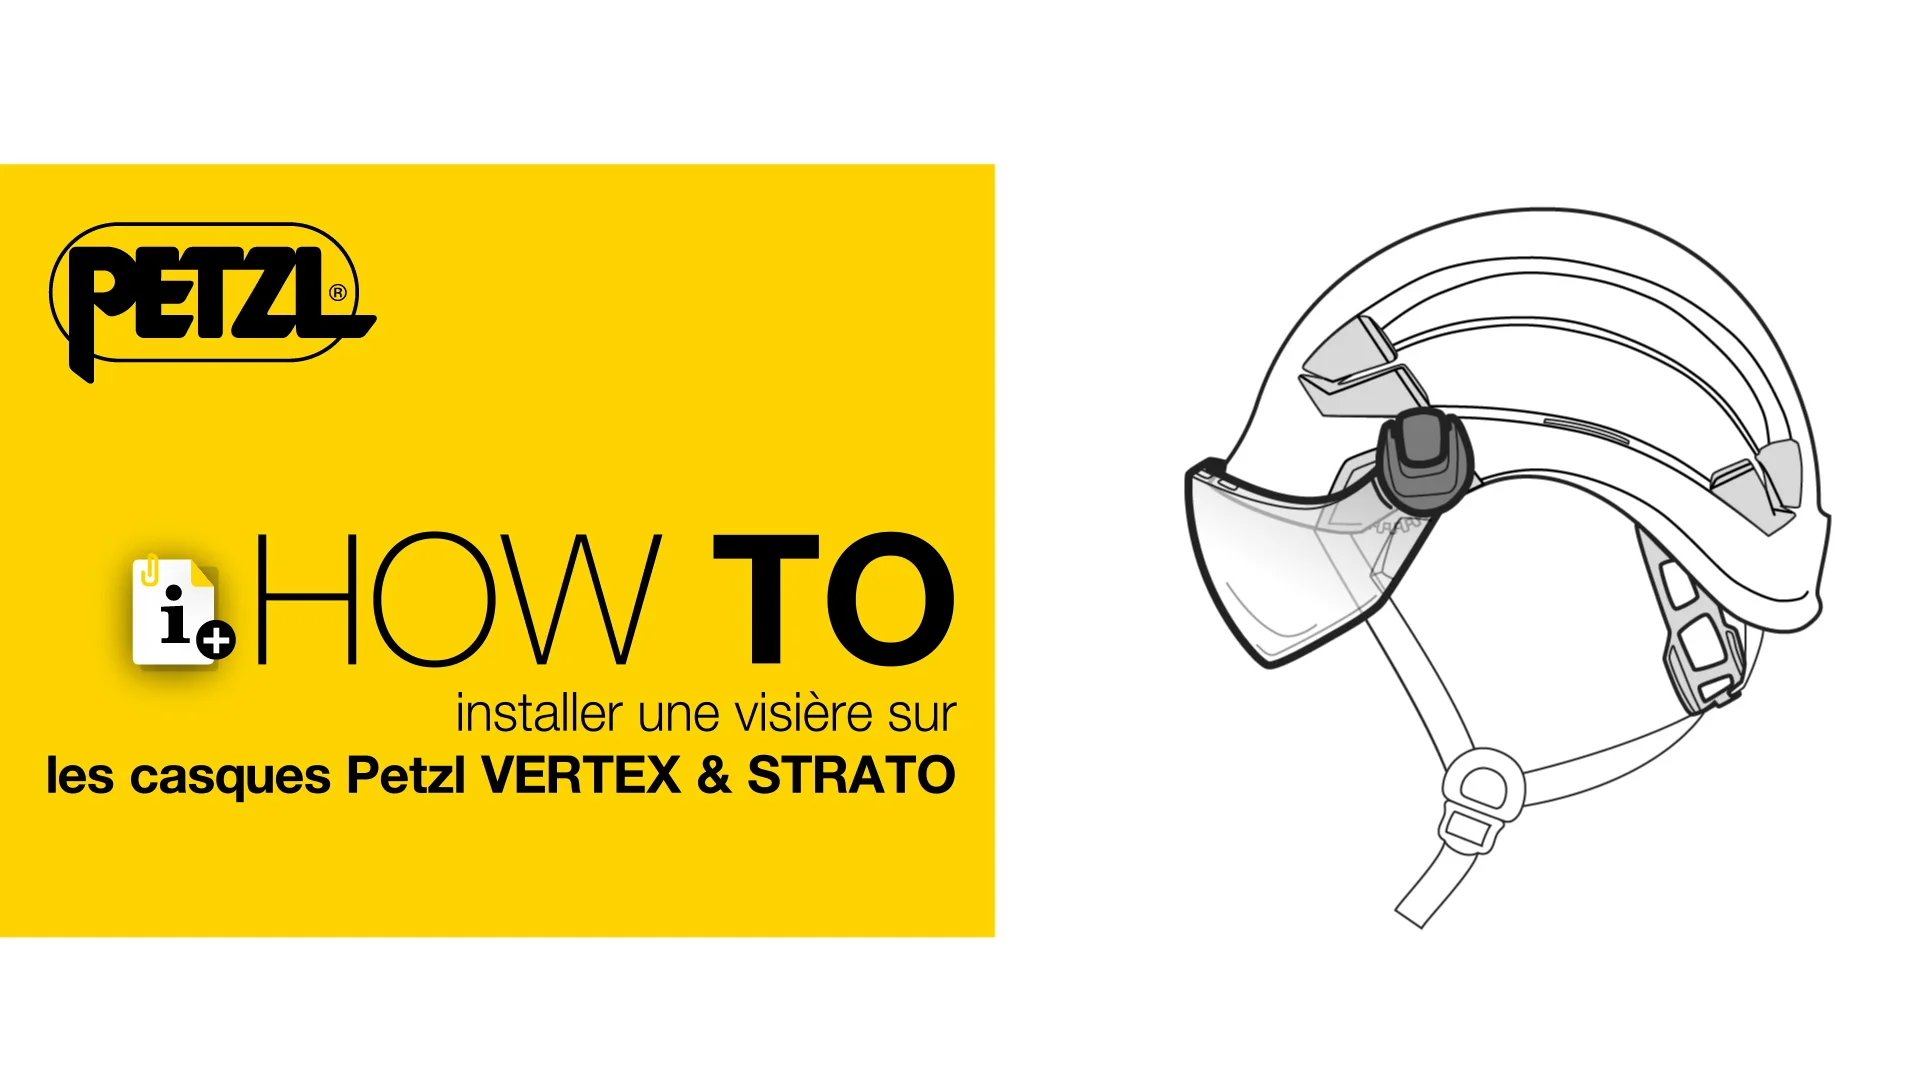 HowTo installer une visière sur les casques Petzl VERTEX & STRATO on Vimeo